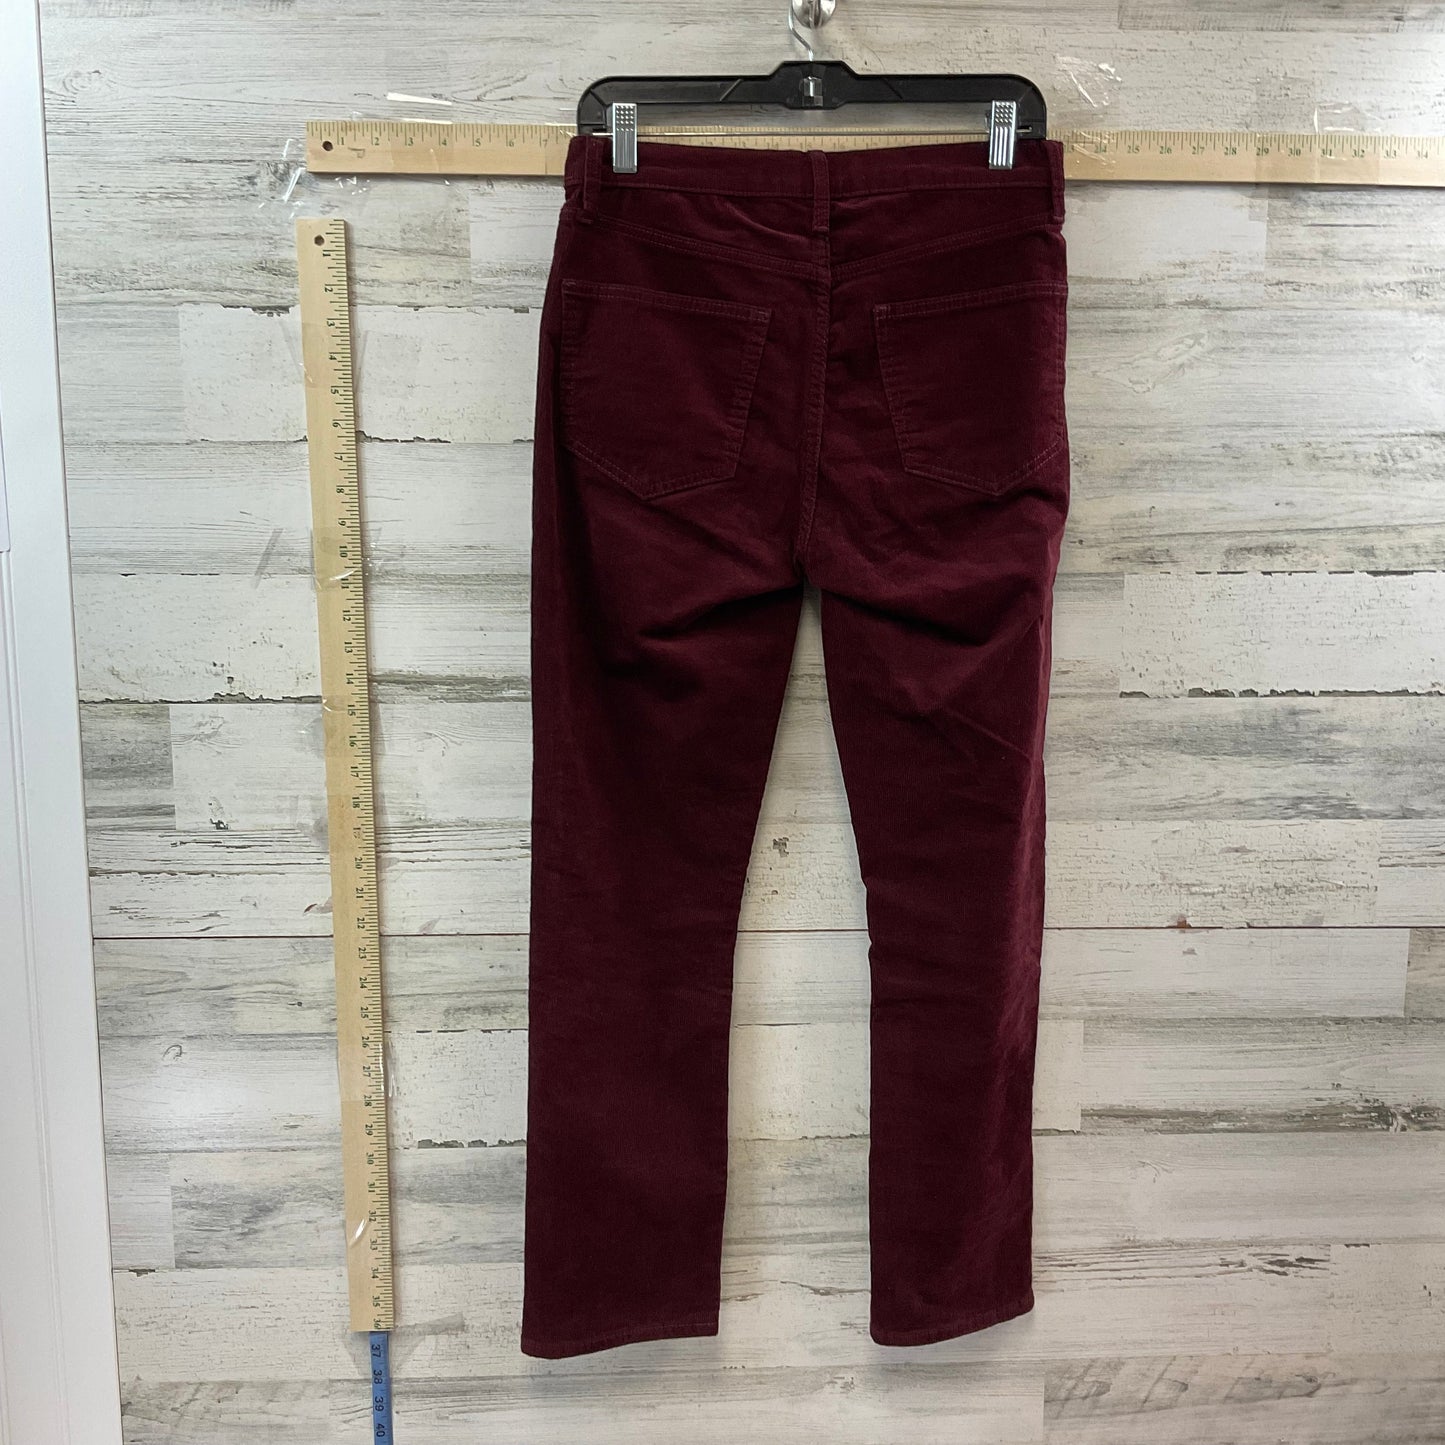 Pants Corduroy By Gap  Size: 6